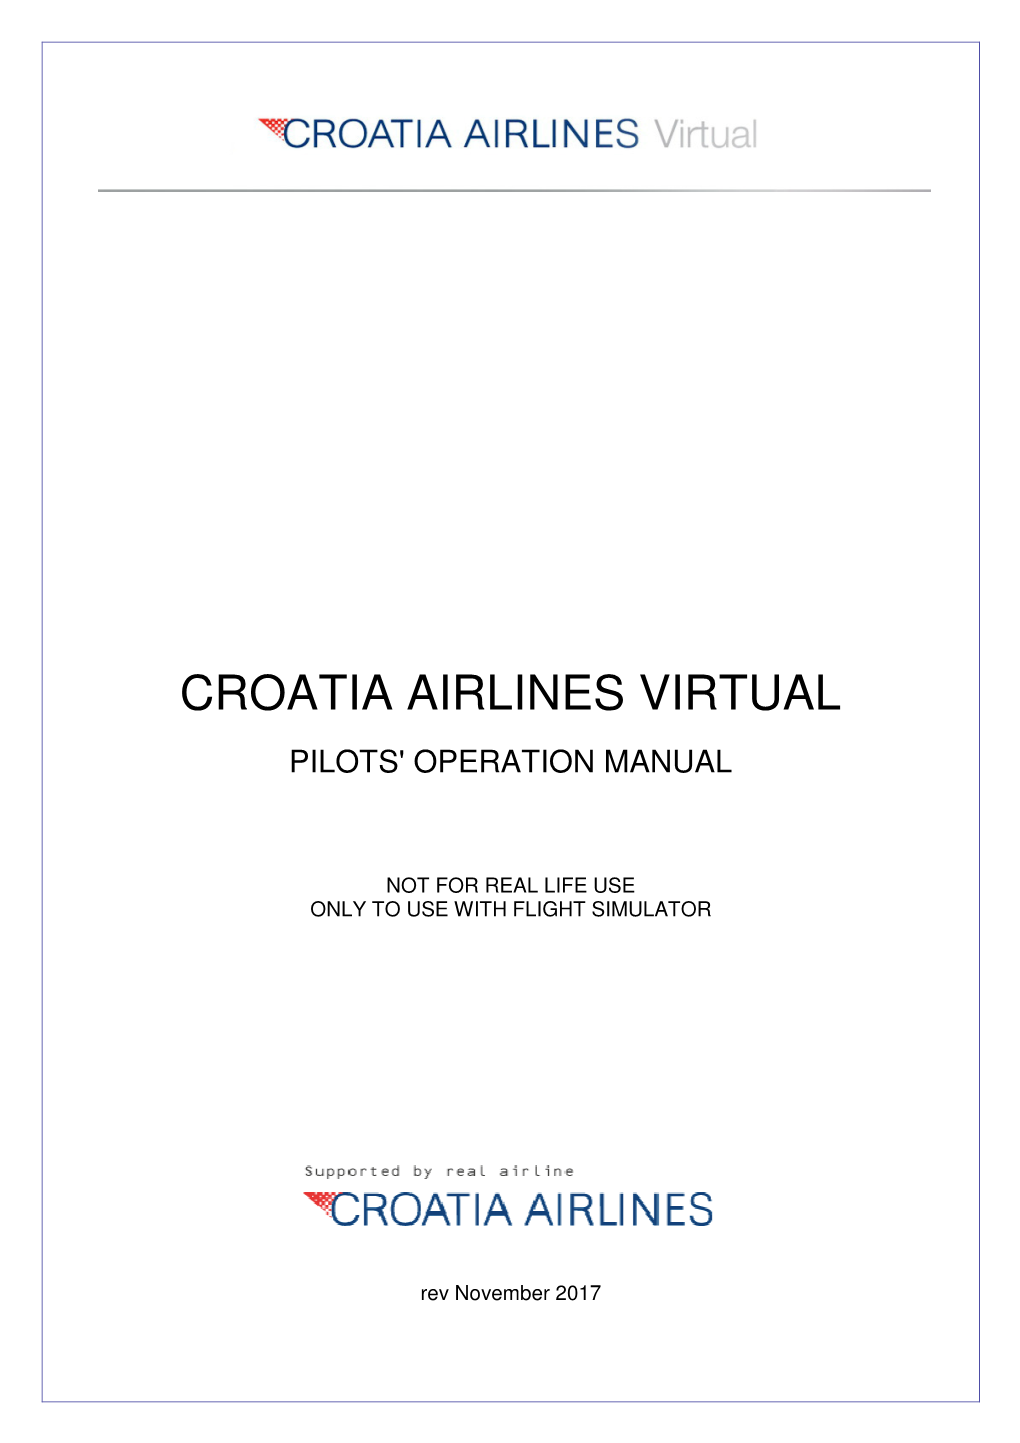 Virtual Airline Manual